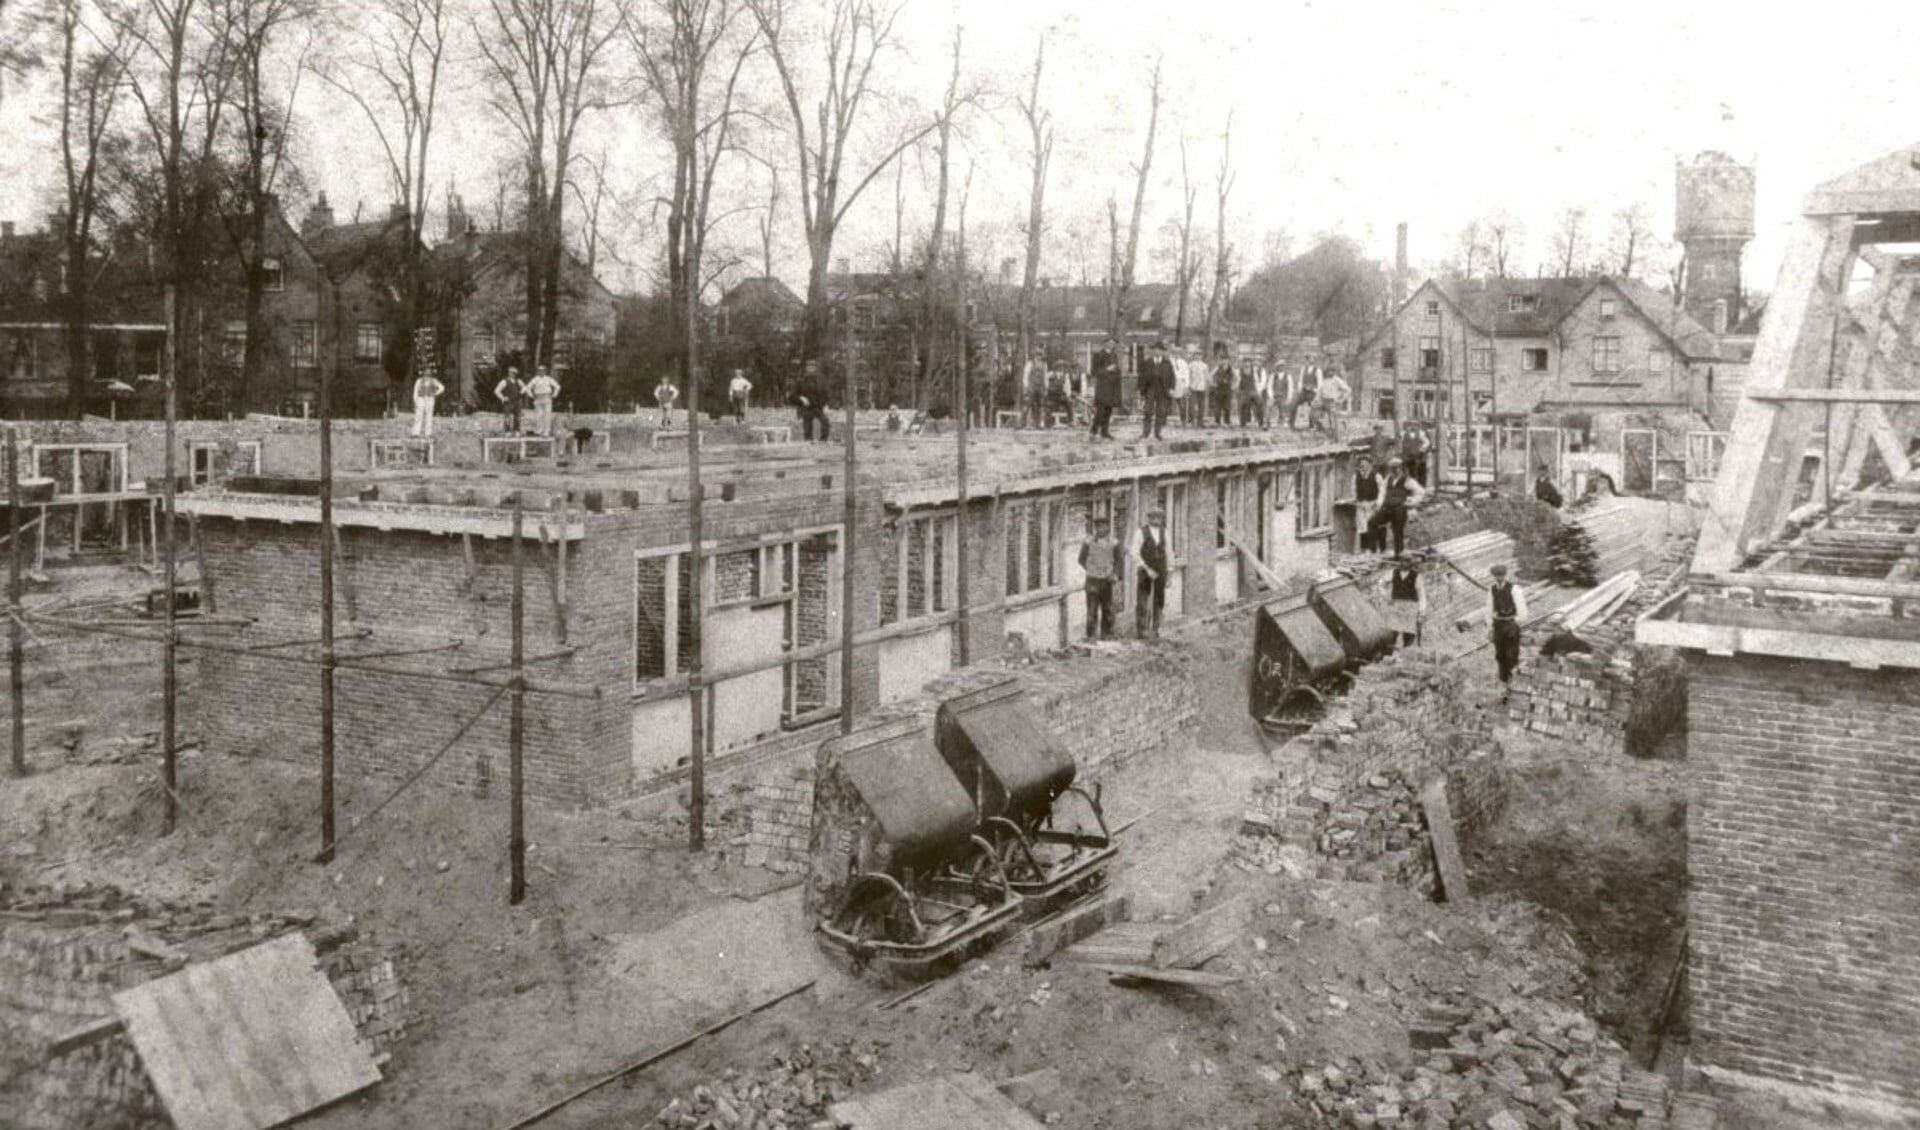 De Talmastraat in aanbouw (1922) met op de achtergrond het Buitenveer en verderop de in 1970 gesloopte watertoren.